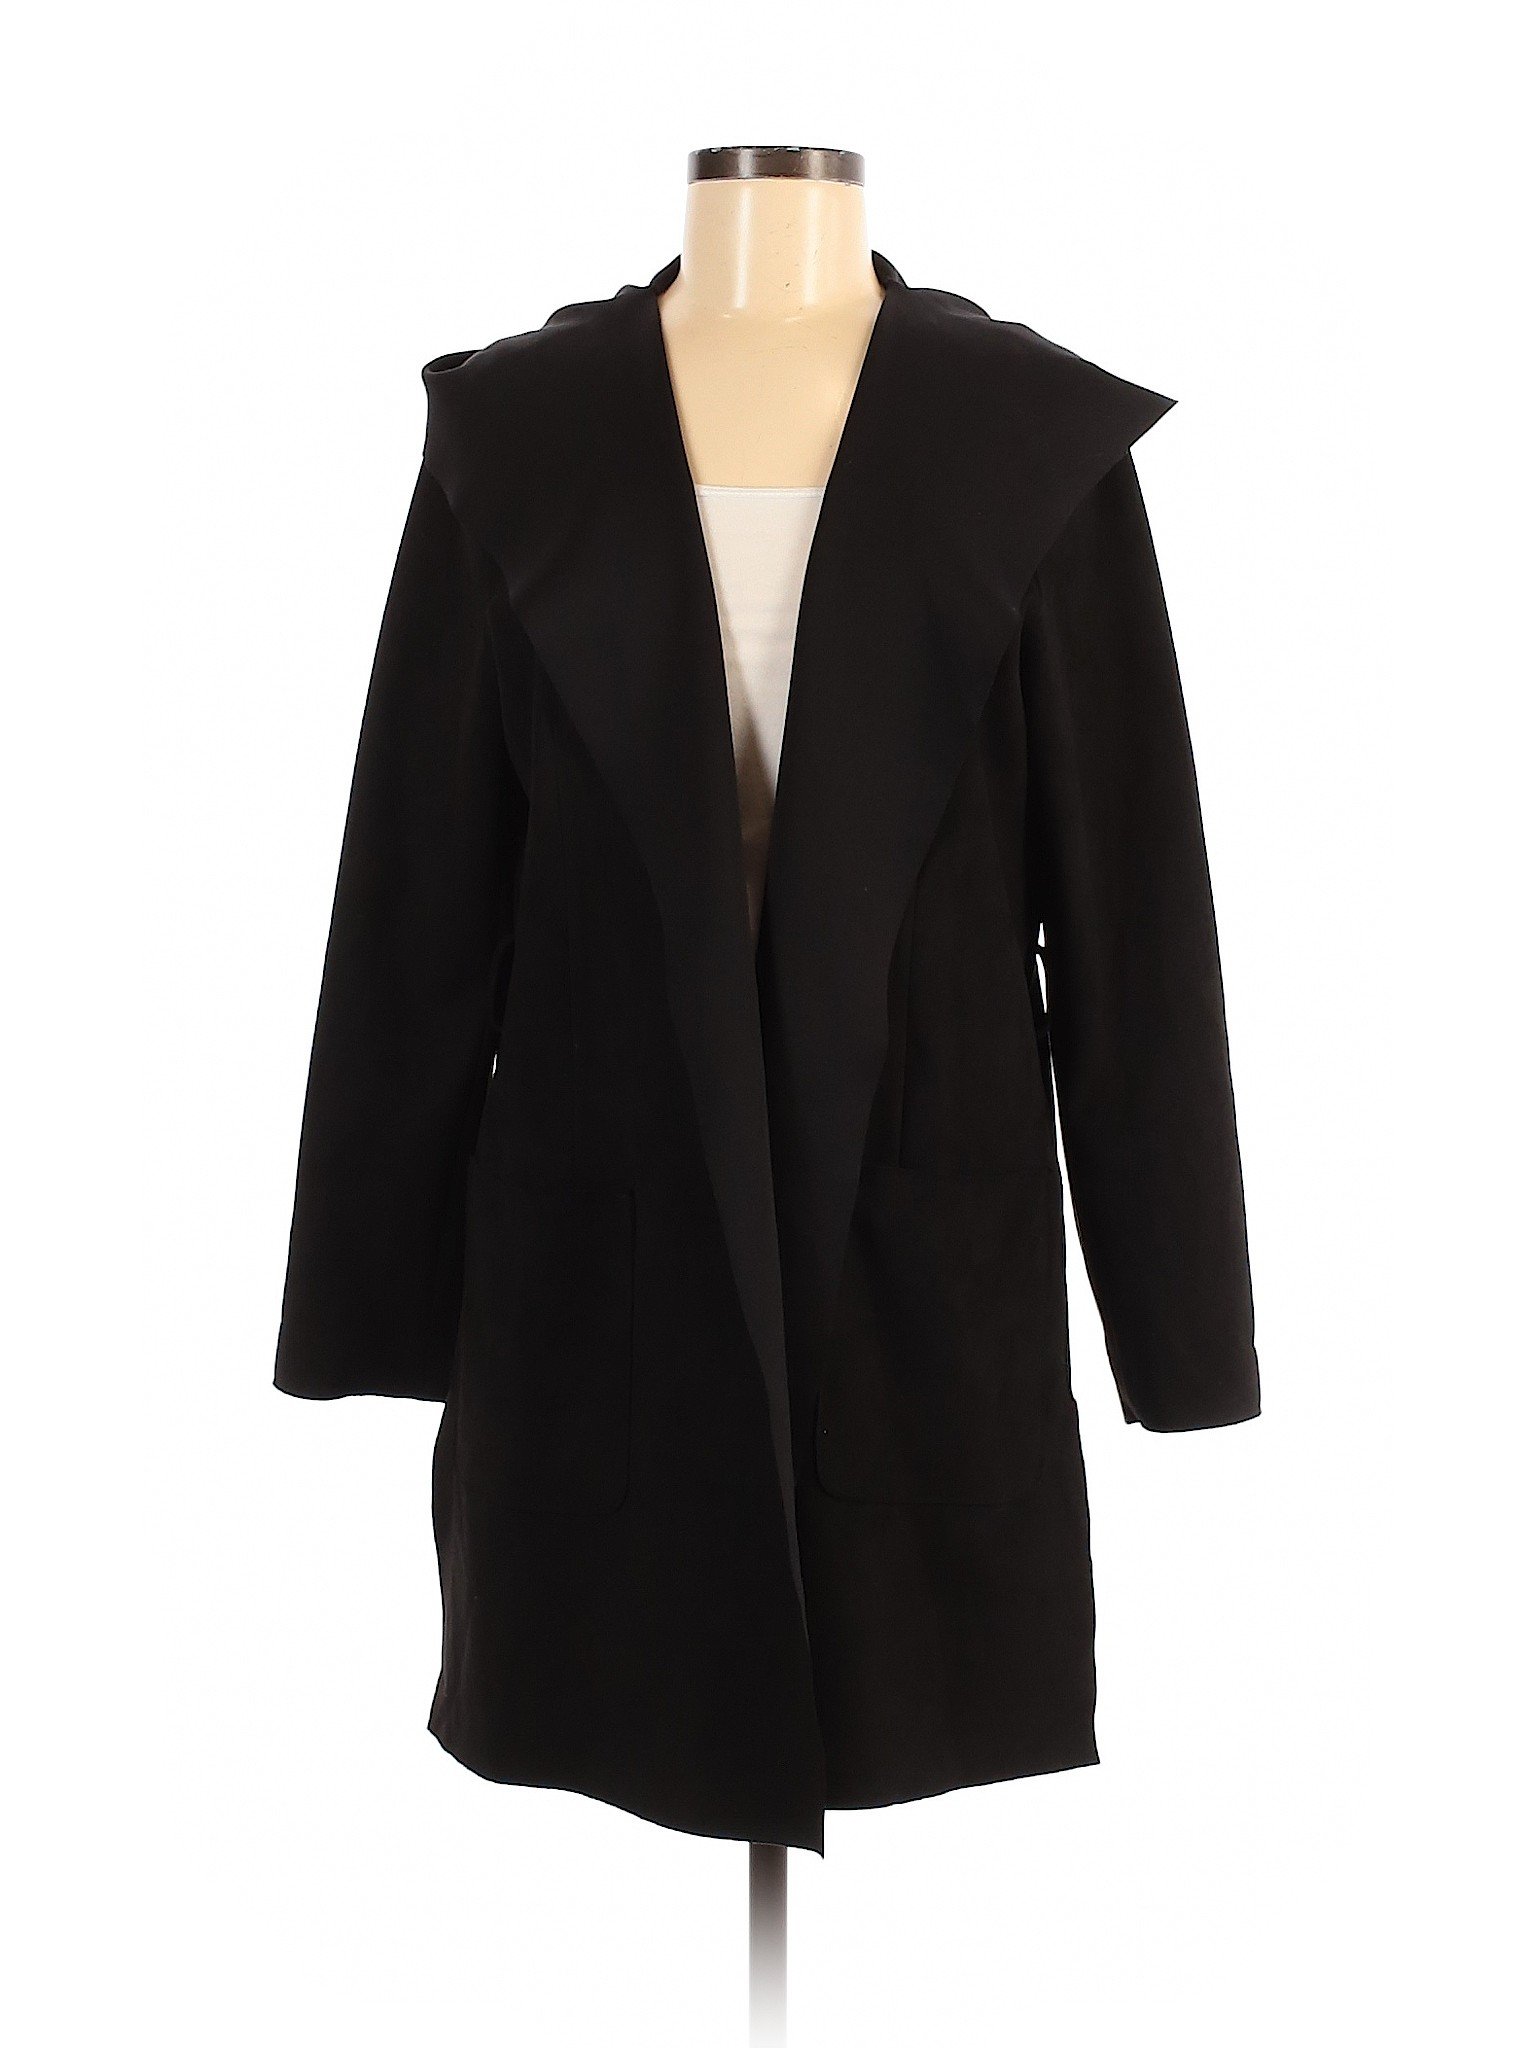 Zara Basic Women Black Jacket M | eBay